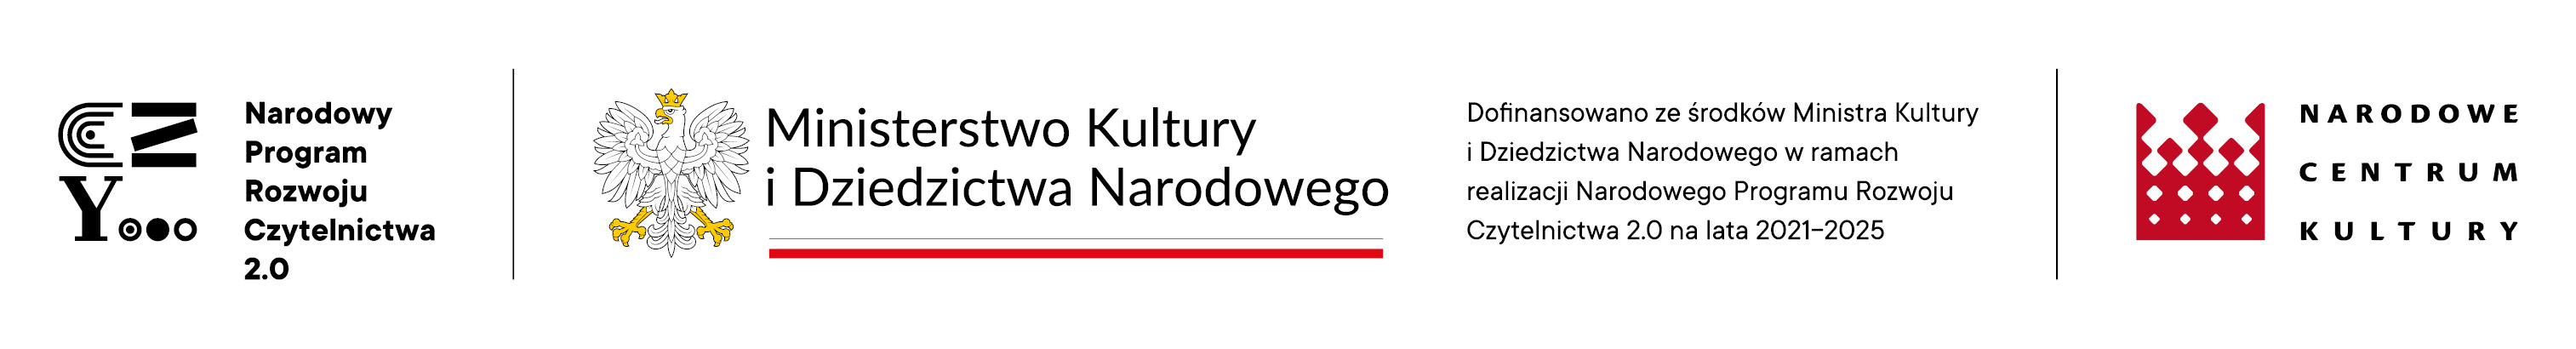 belka logotypowa Narodowego Programu Rozwoju Czytelnictwa 2.0. na lata 2021-2025